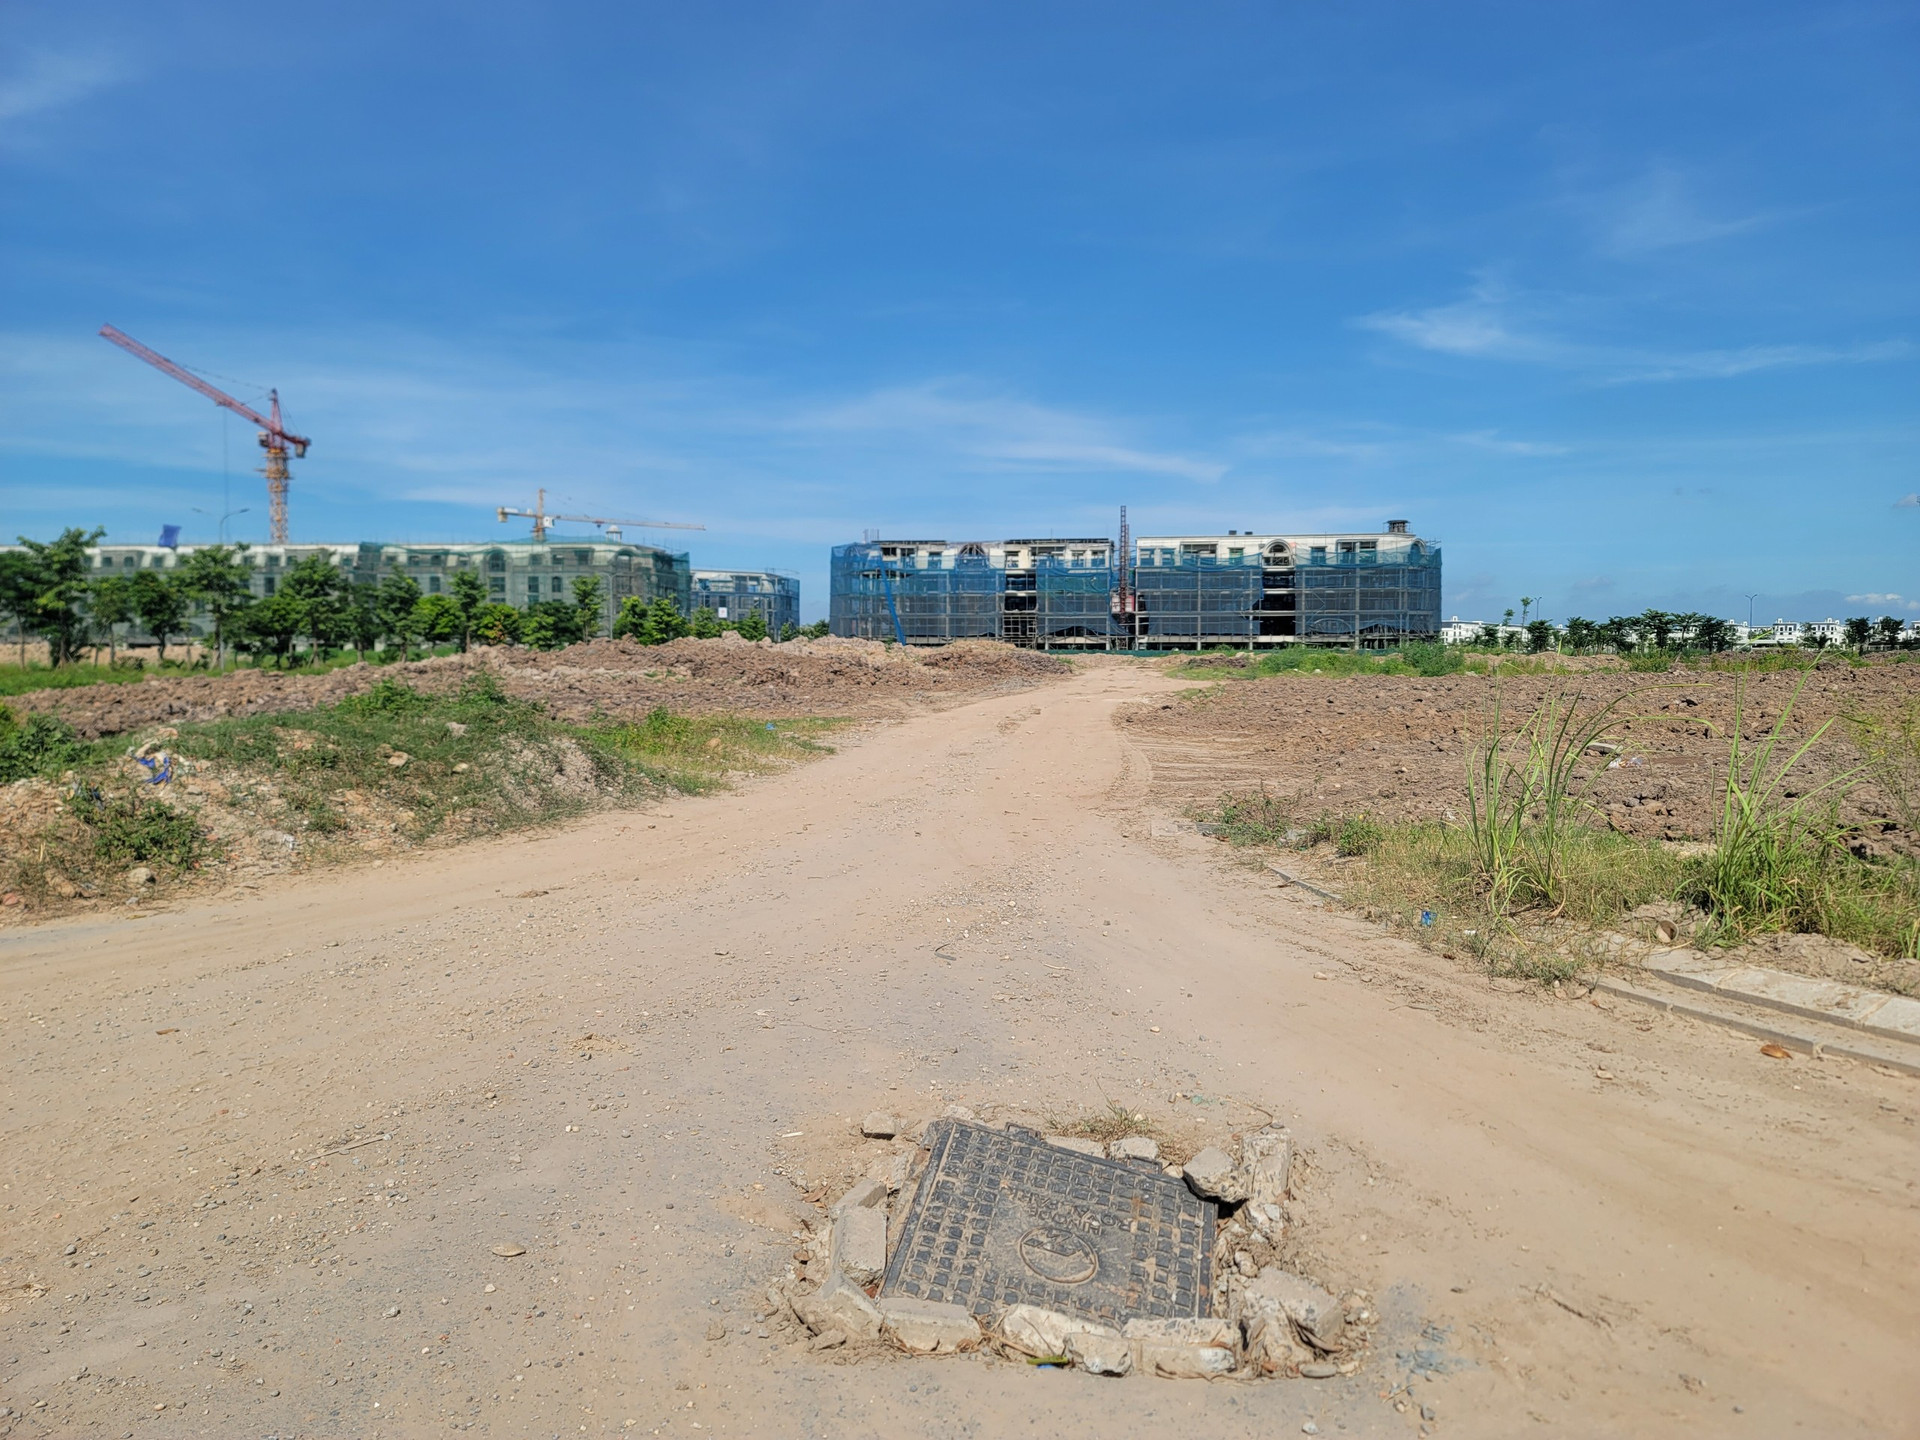 Trước đó, sau nhiều lần bị UBND Thành phố Hà Nội nhắc nhở vì không triển khai, tháng 06/2020, tại Hội nghị “Hà Nội 2020 - Hợp tác đầu tư và phát triển”, Khu đô thị Hinode Royal Park nhận quyết định chủ trương đầu tư mới.